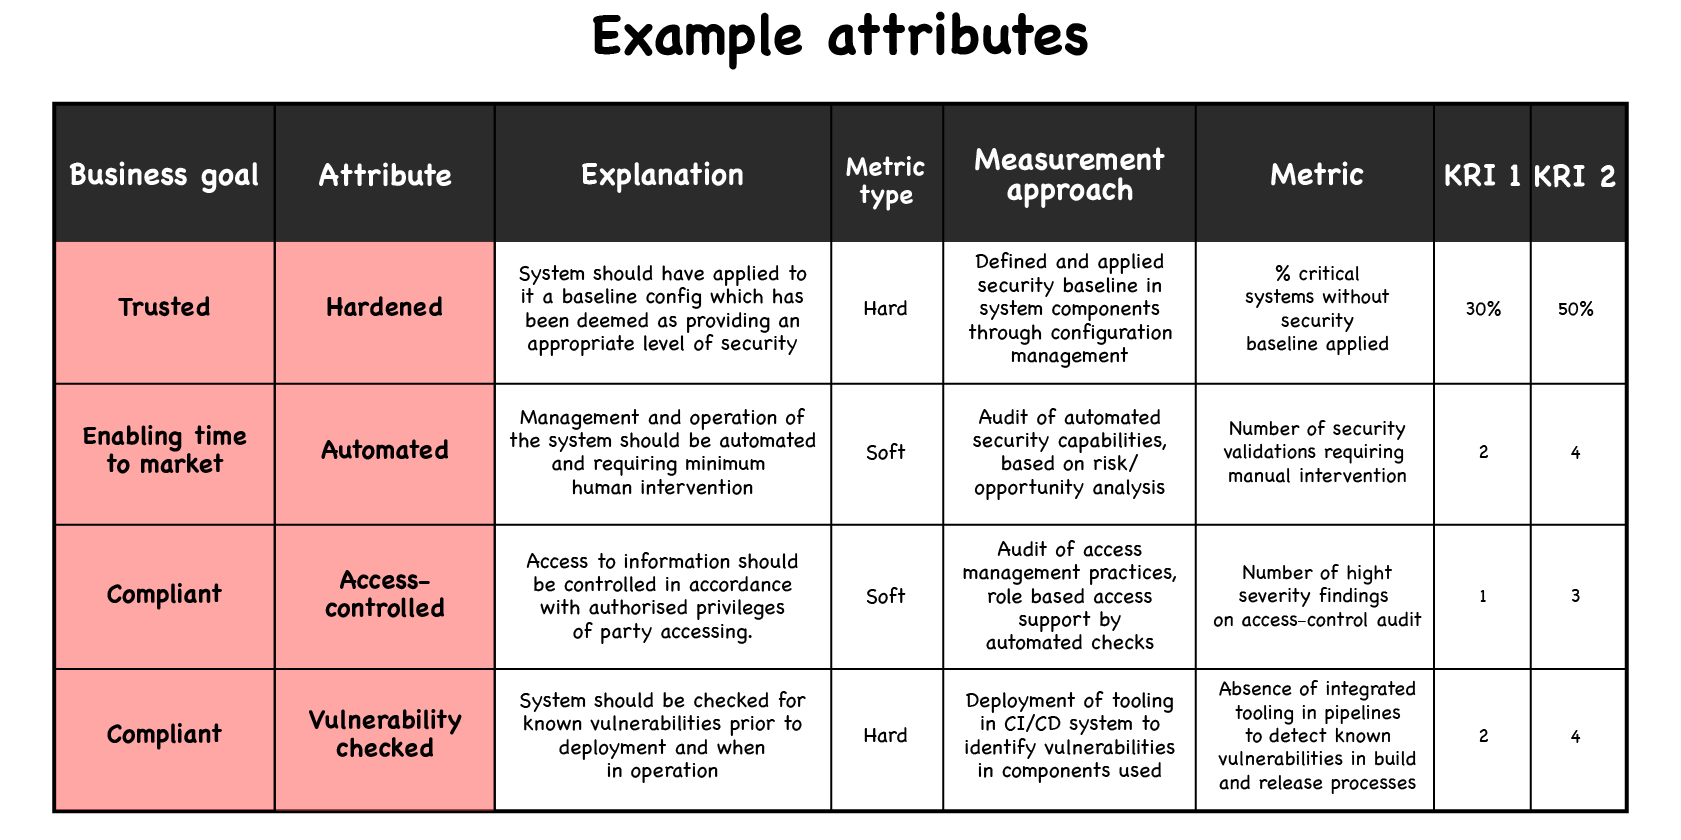 Example attributes